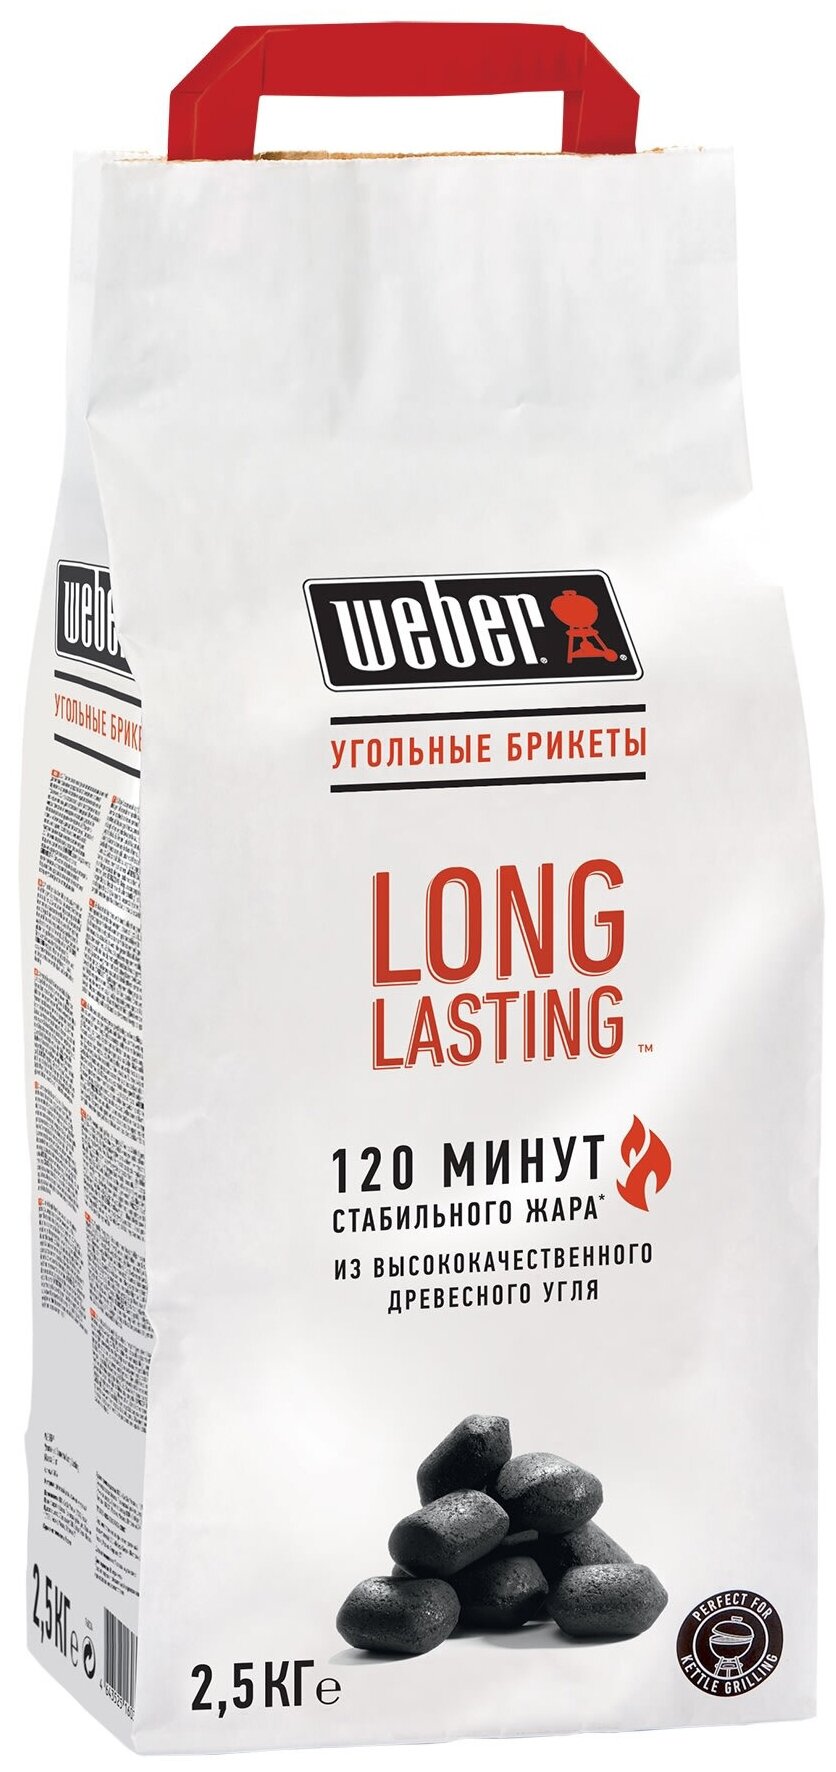 Угольные брикеты Weber Long Lasting Premium 120 минут, 2,5 кг